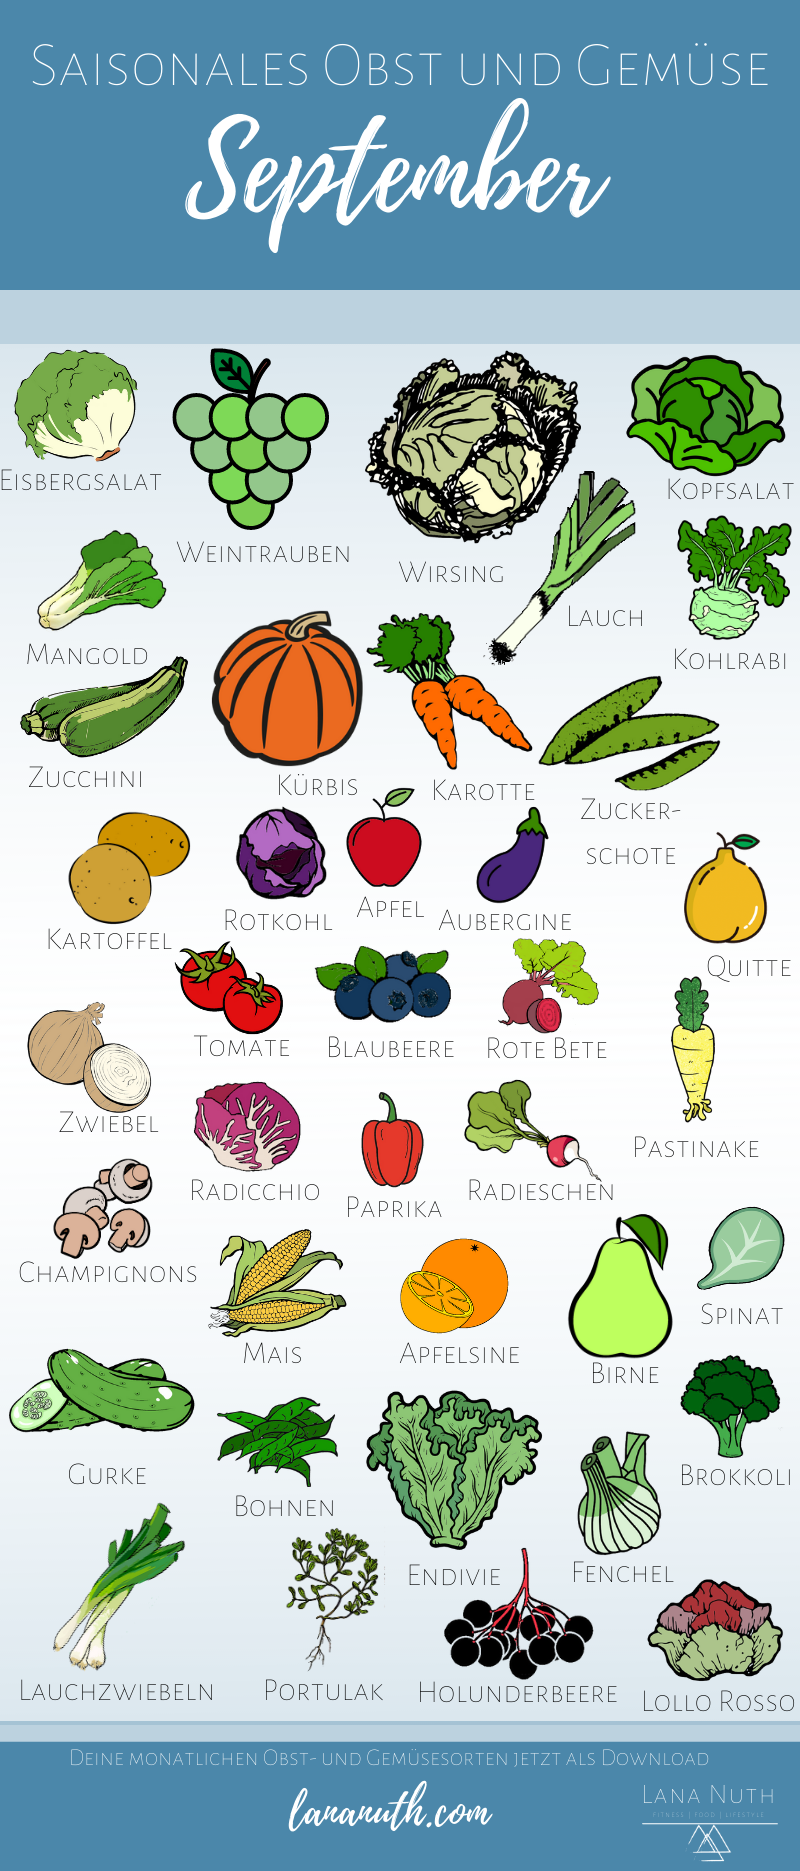 Saisonales Obst und Gemüse im September